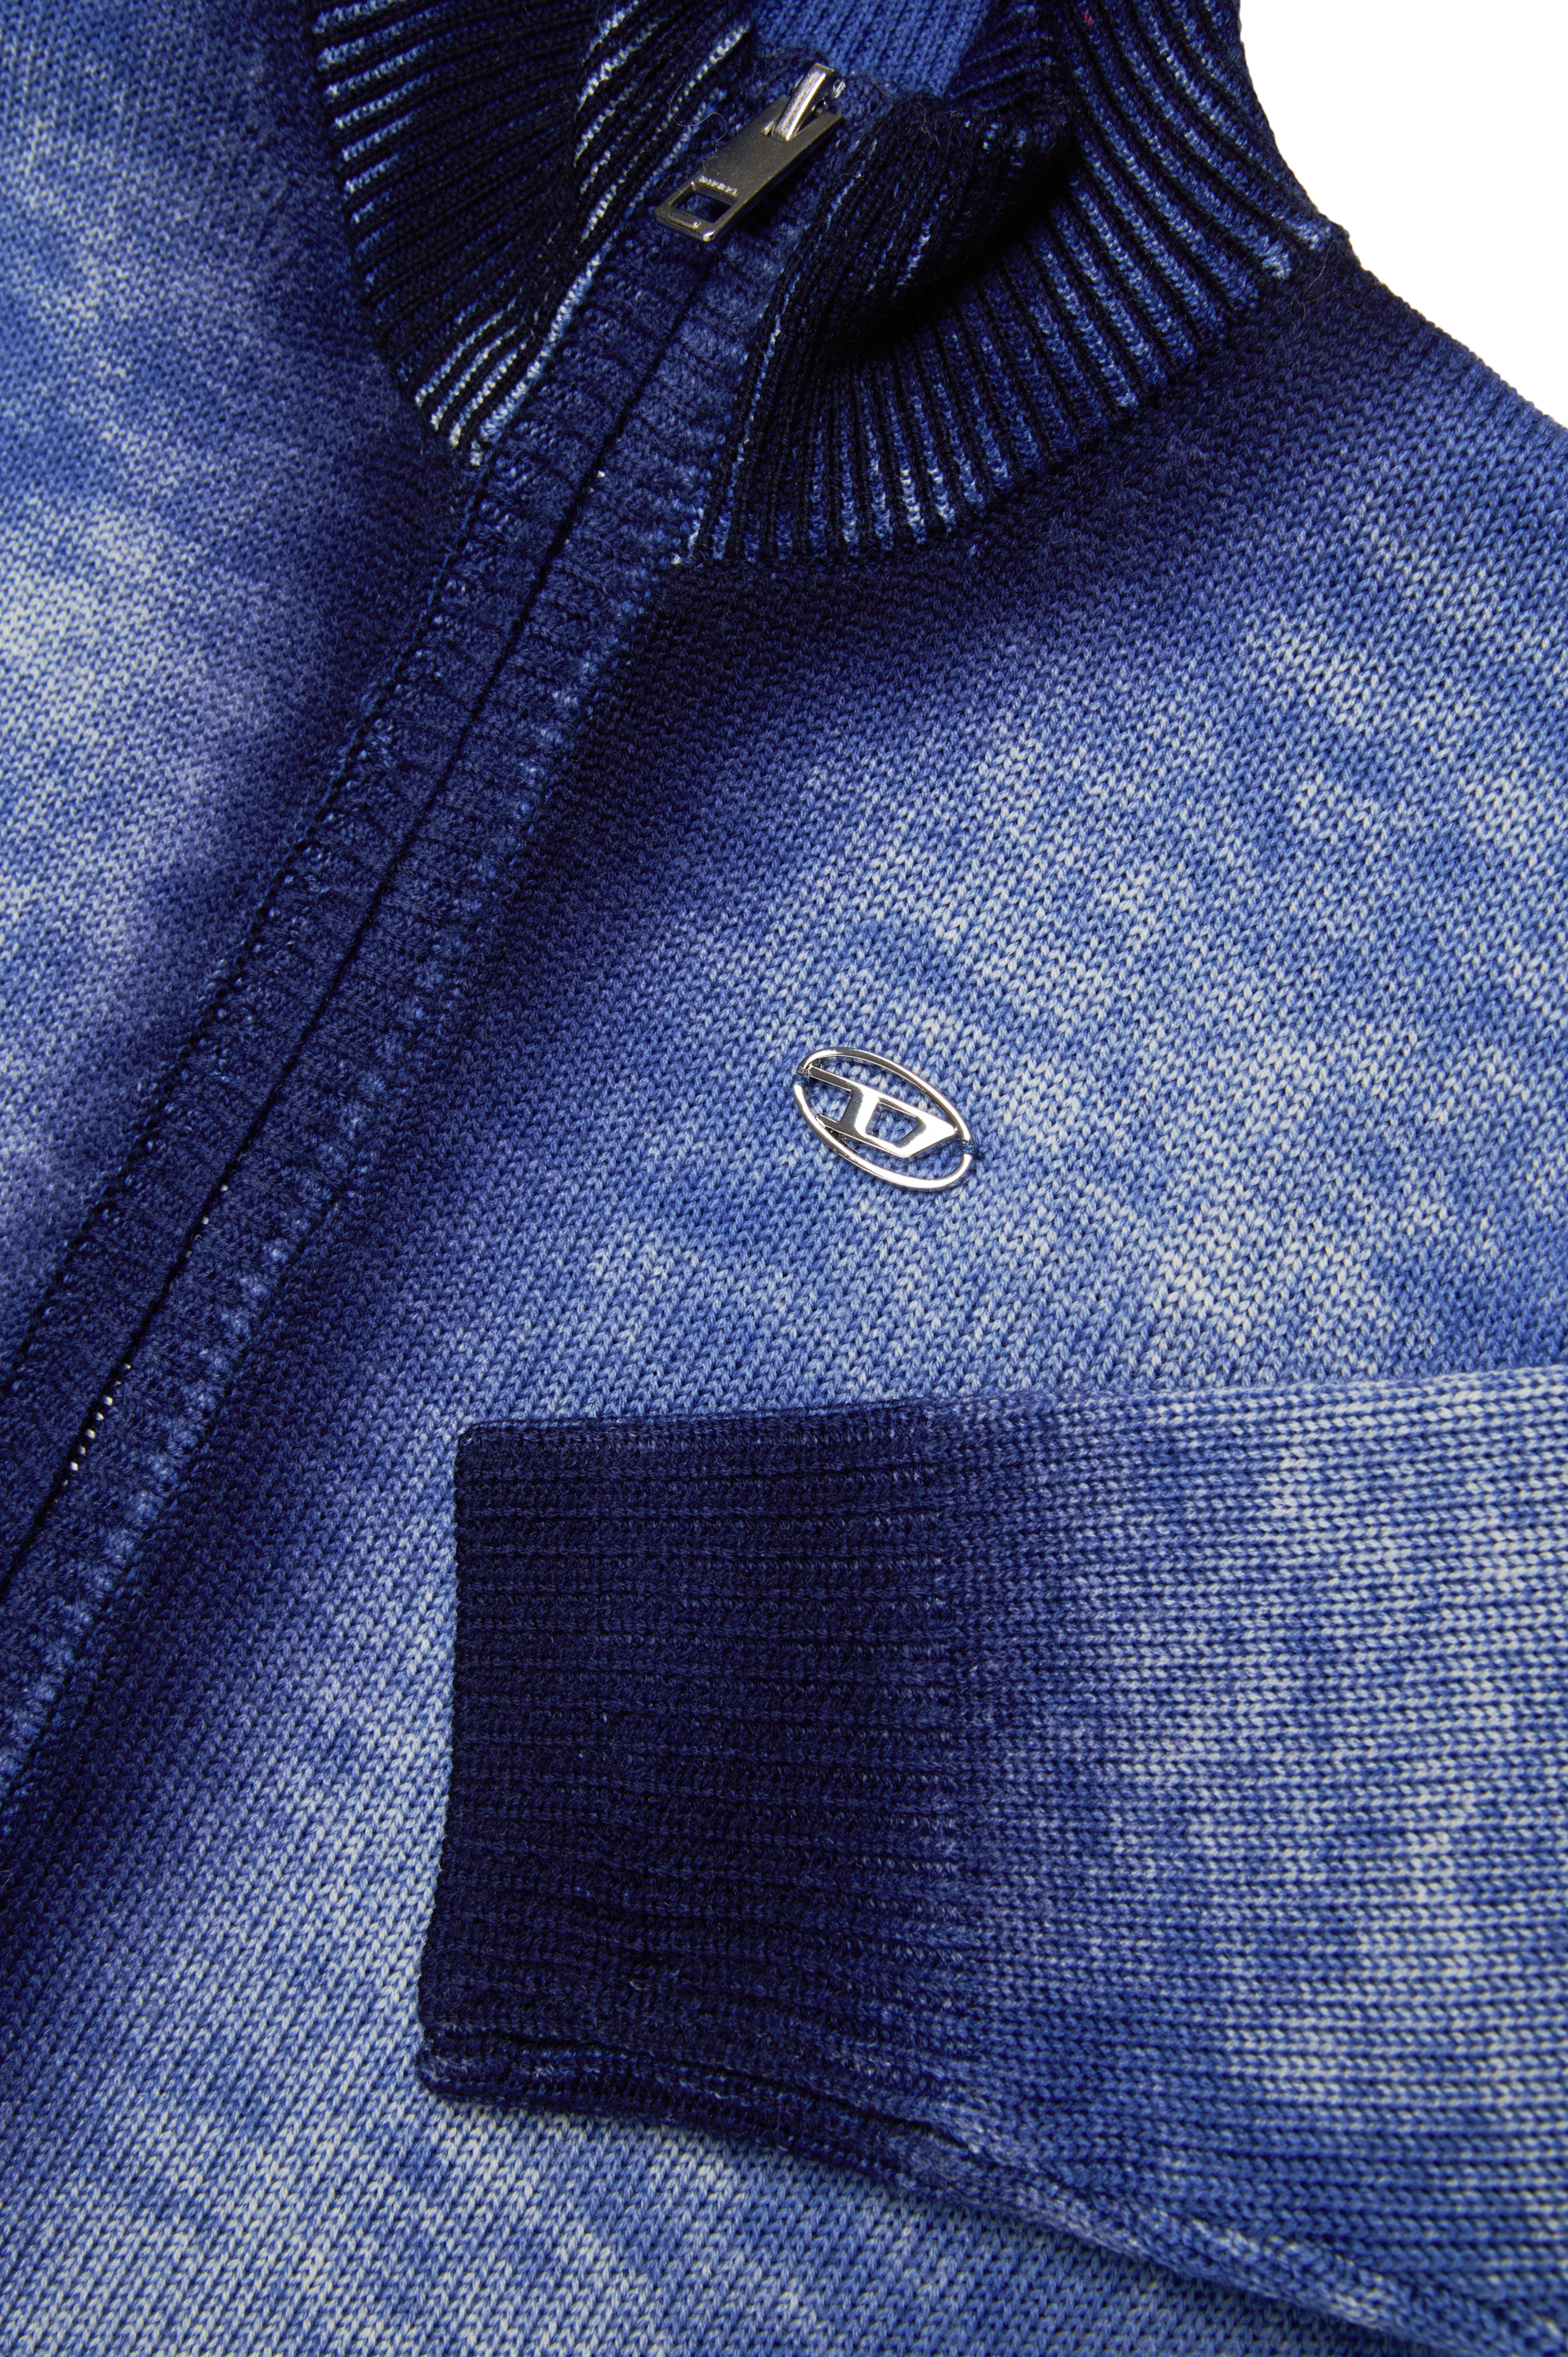 Diesel - KMILOZIP, Homme Cardigan zippé en laine traitée in Bleu - Image 4